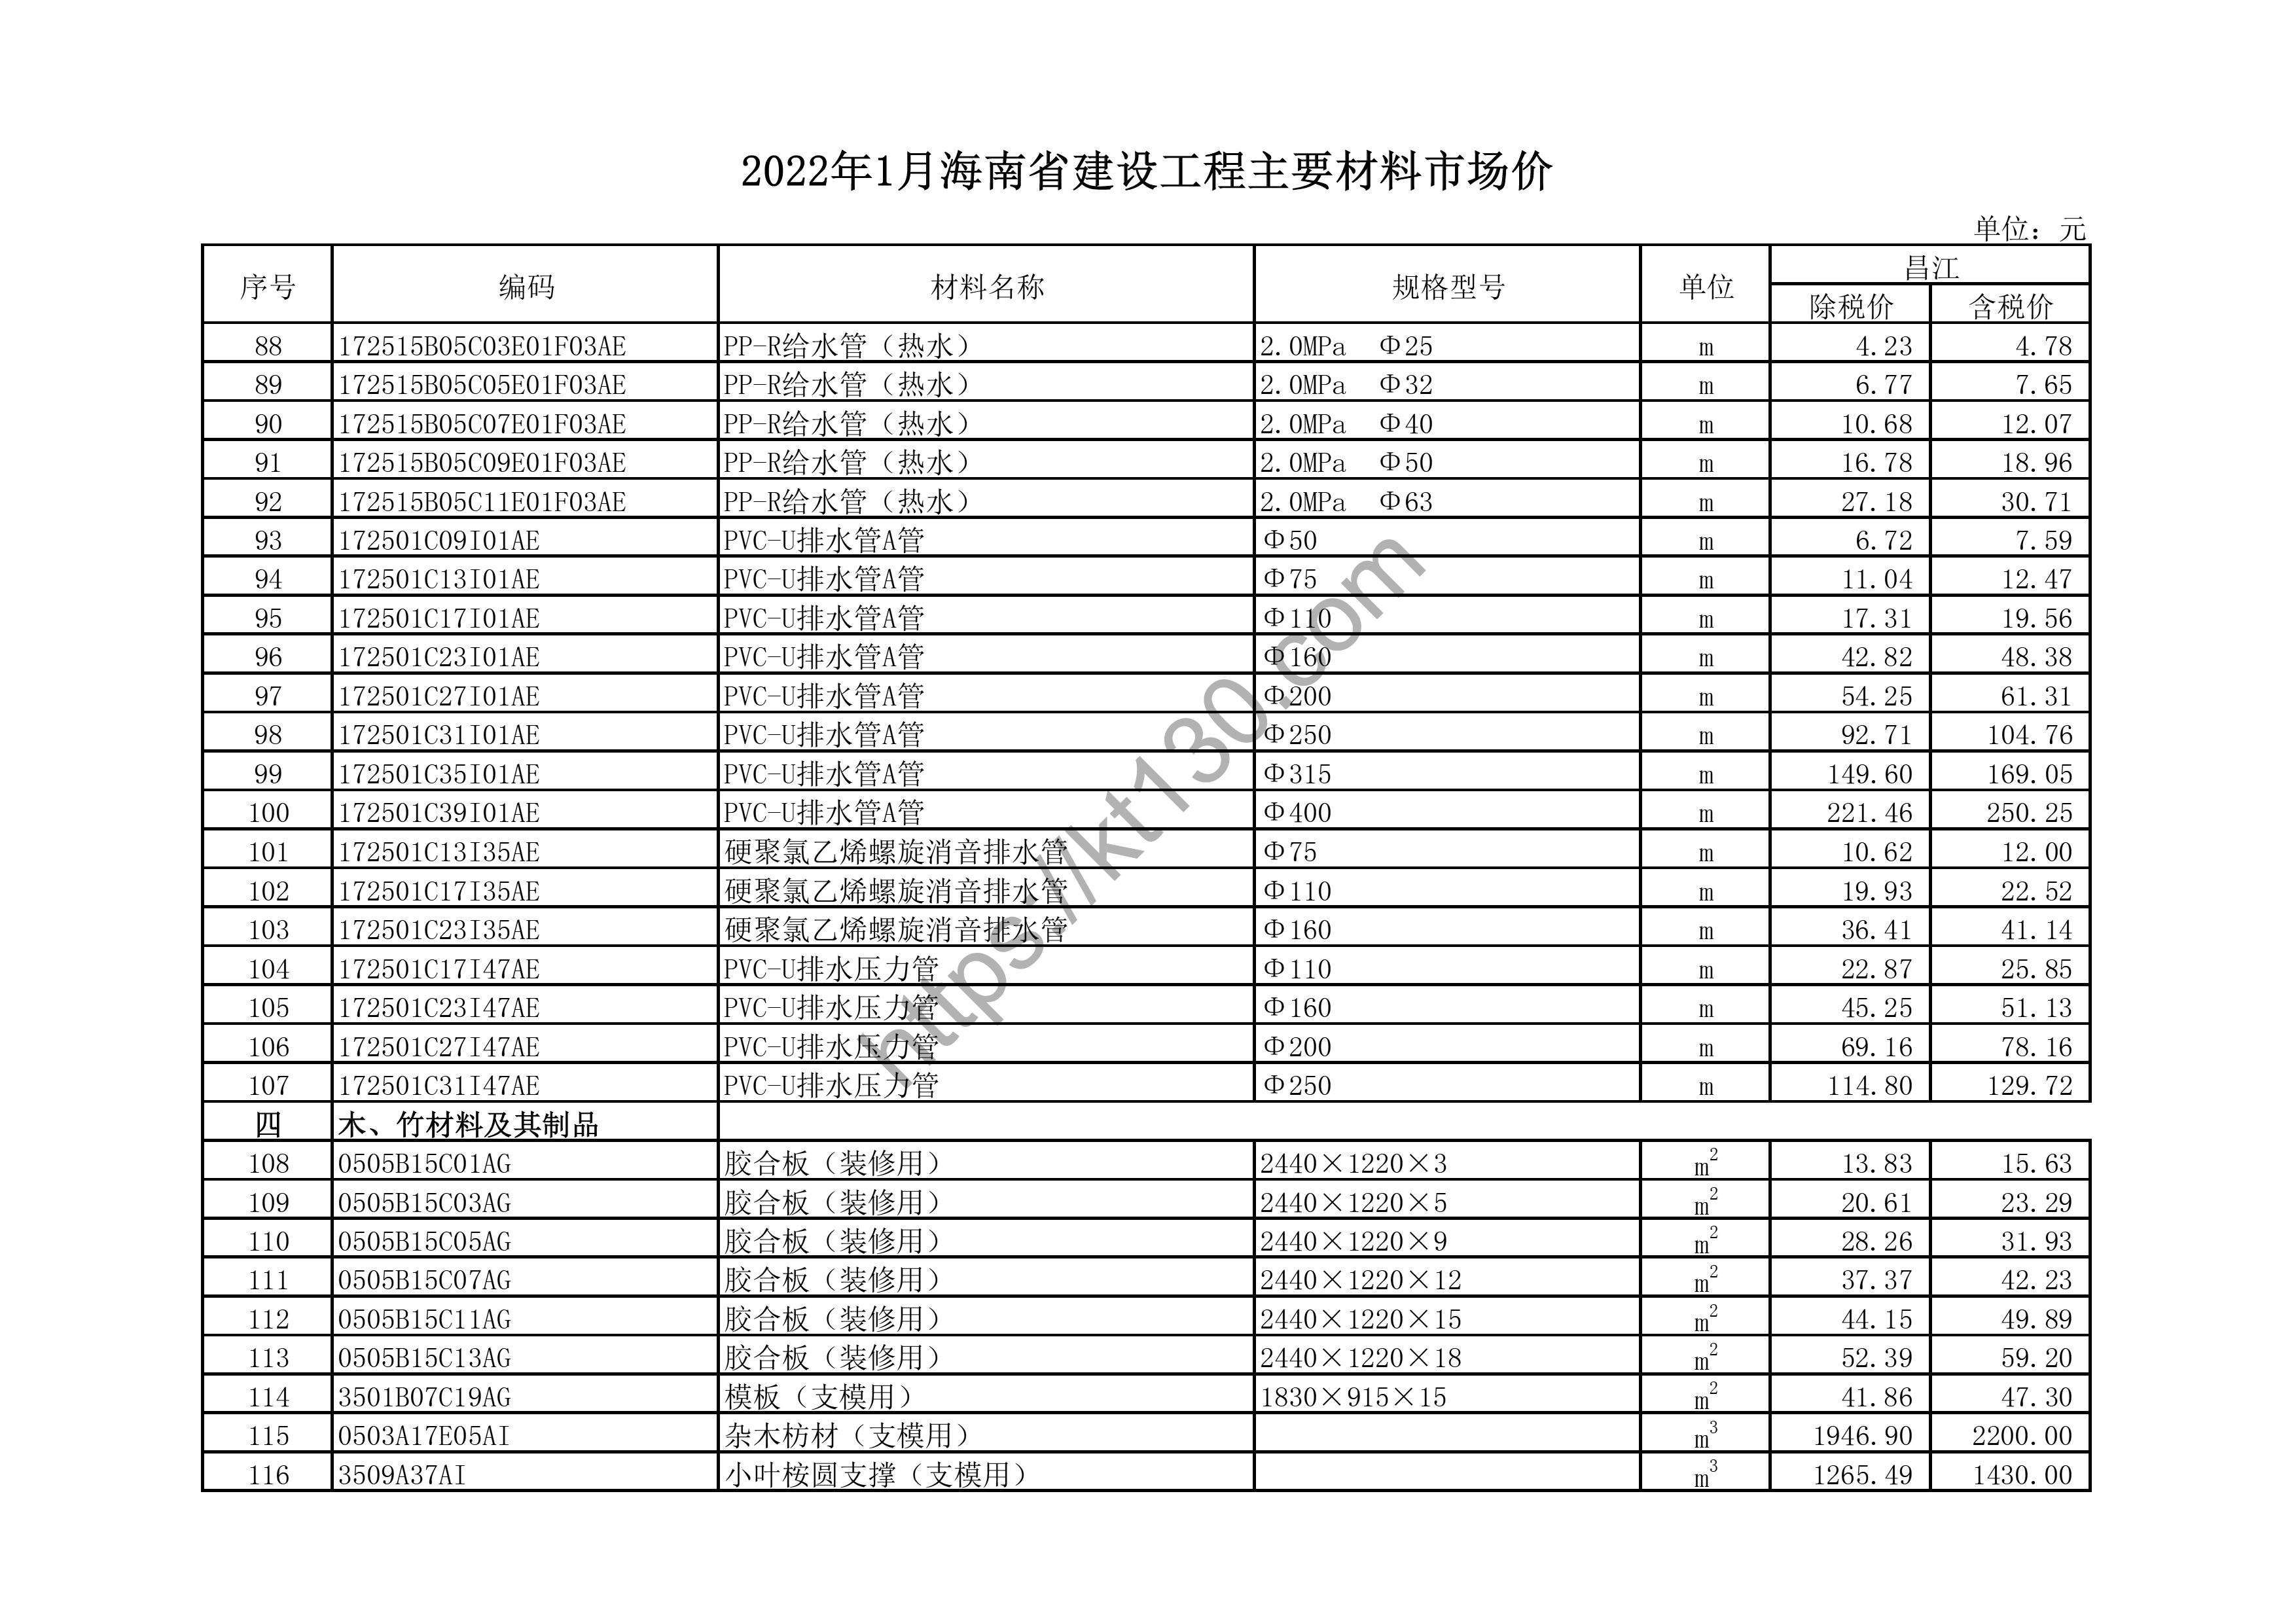 海南省2022年1月建筑材料价_木、竹材料_43743